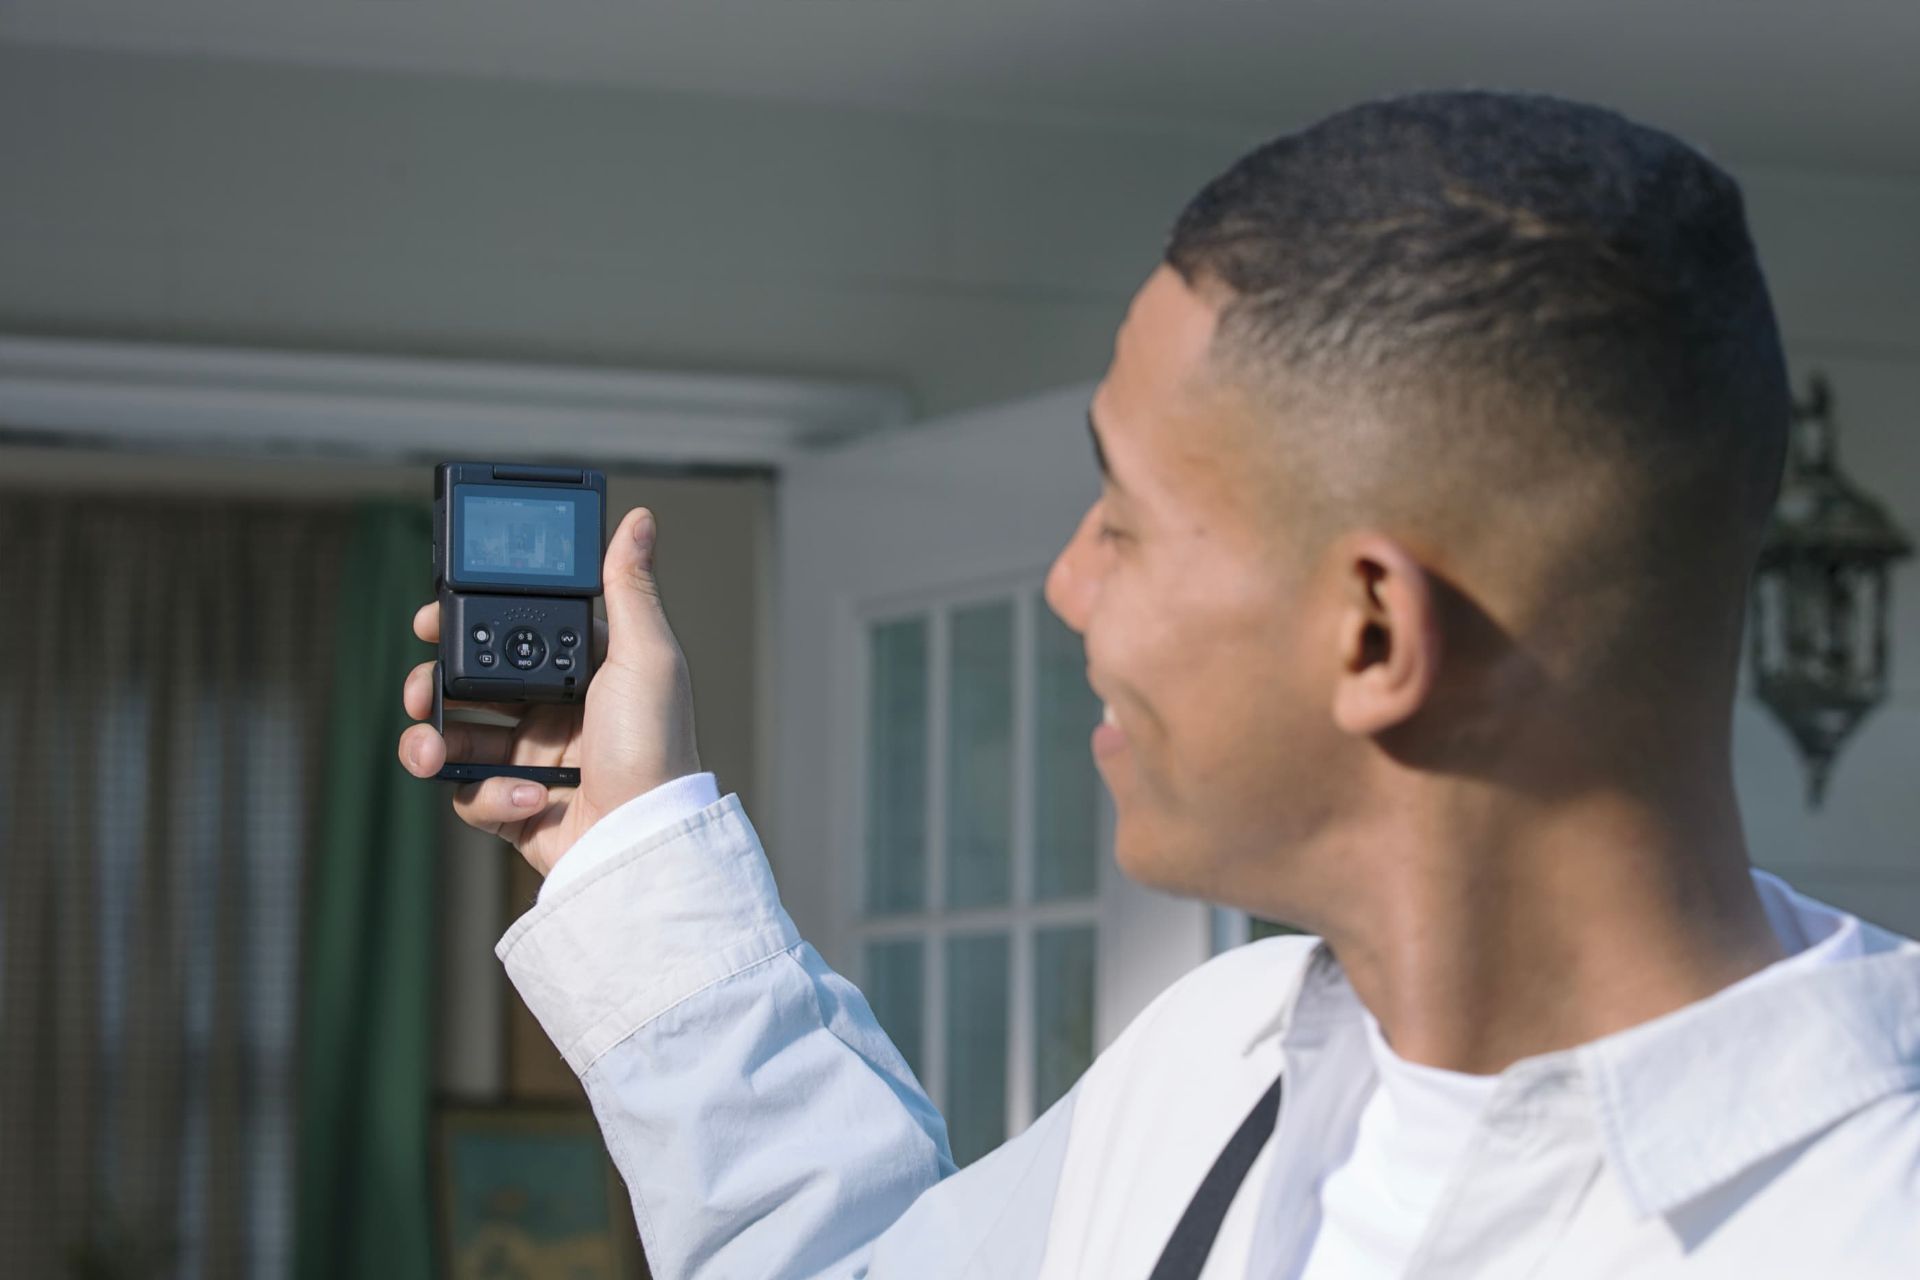 دوربین ولاگ کانن V10 در دست مرد سیاه پوست